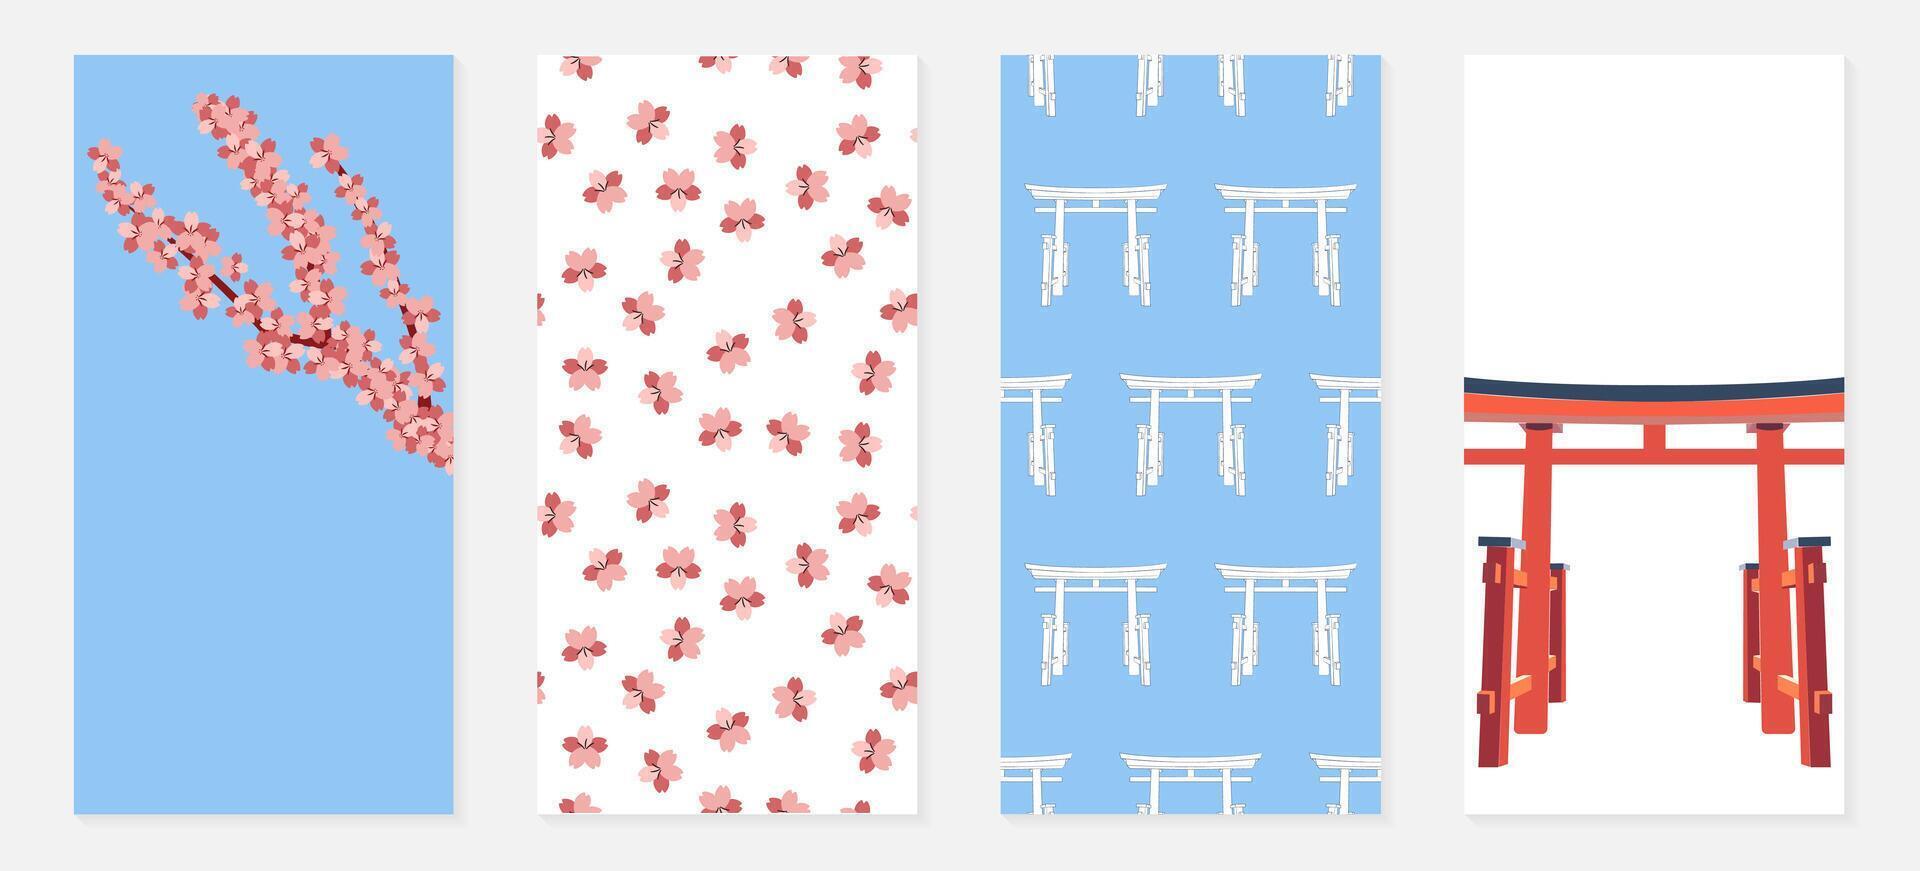 Japan Poster einstellen - - Sakura, torii Tor. Sammlung von Banner zum Sozial Netzwerke. Muster mit Rosa Blumen, botanisch Geäst. japanisch religiös Wahrzeichen. asiatisch Kultur. Farbe Illustration vektor